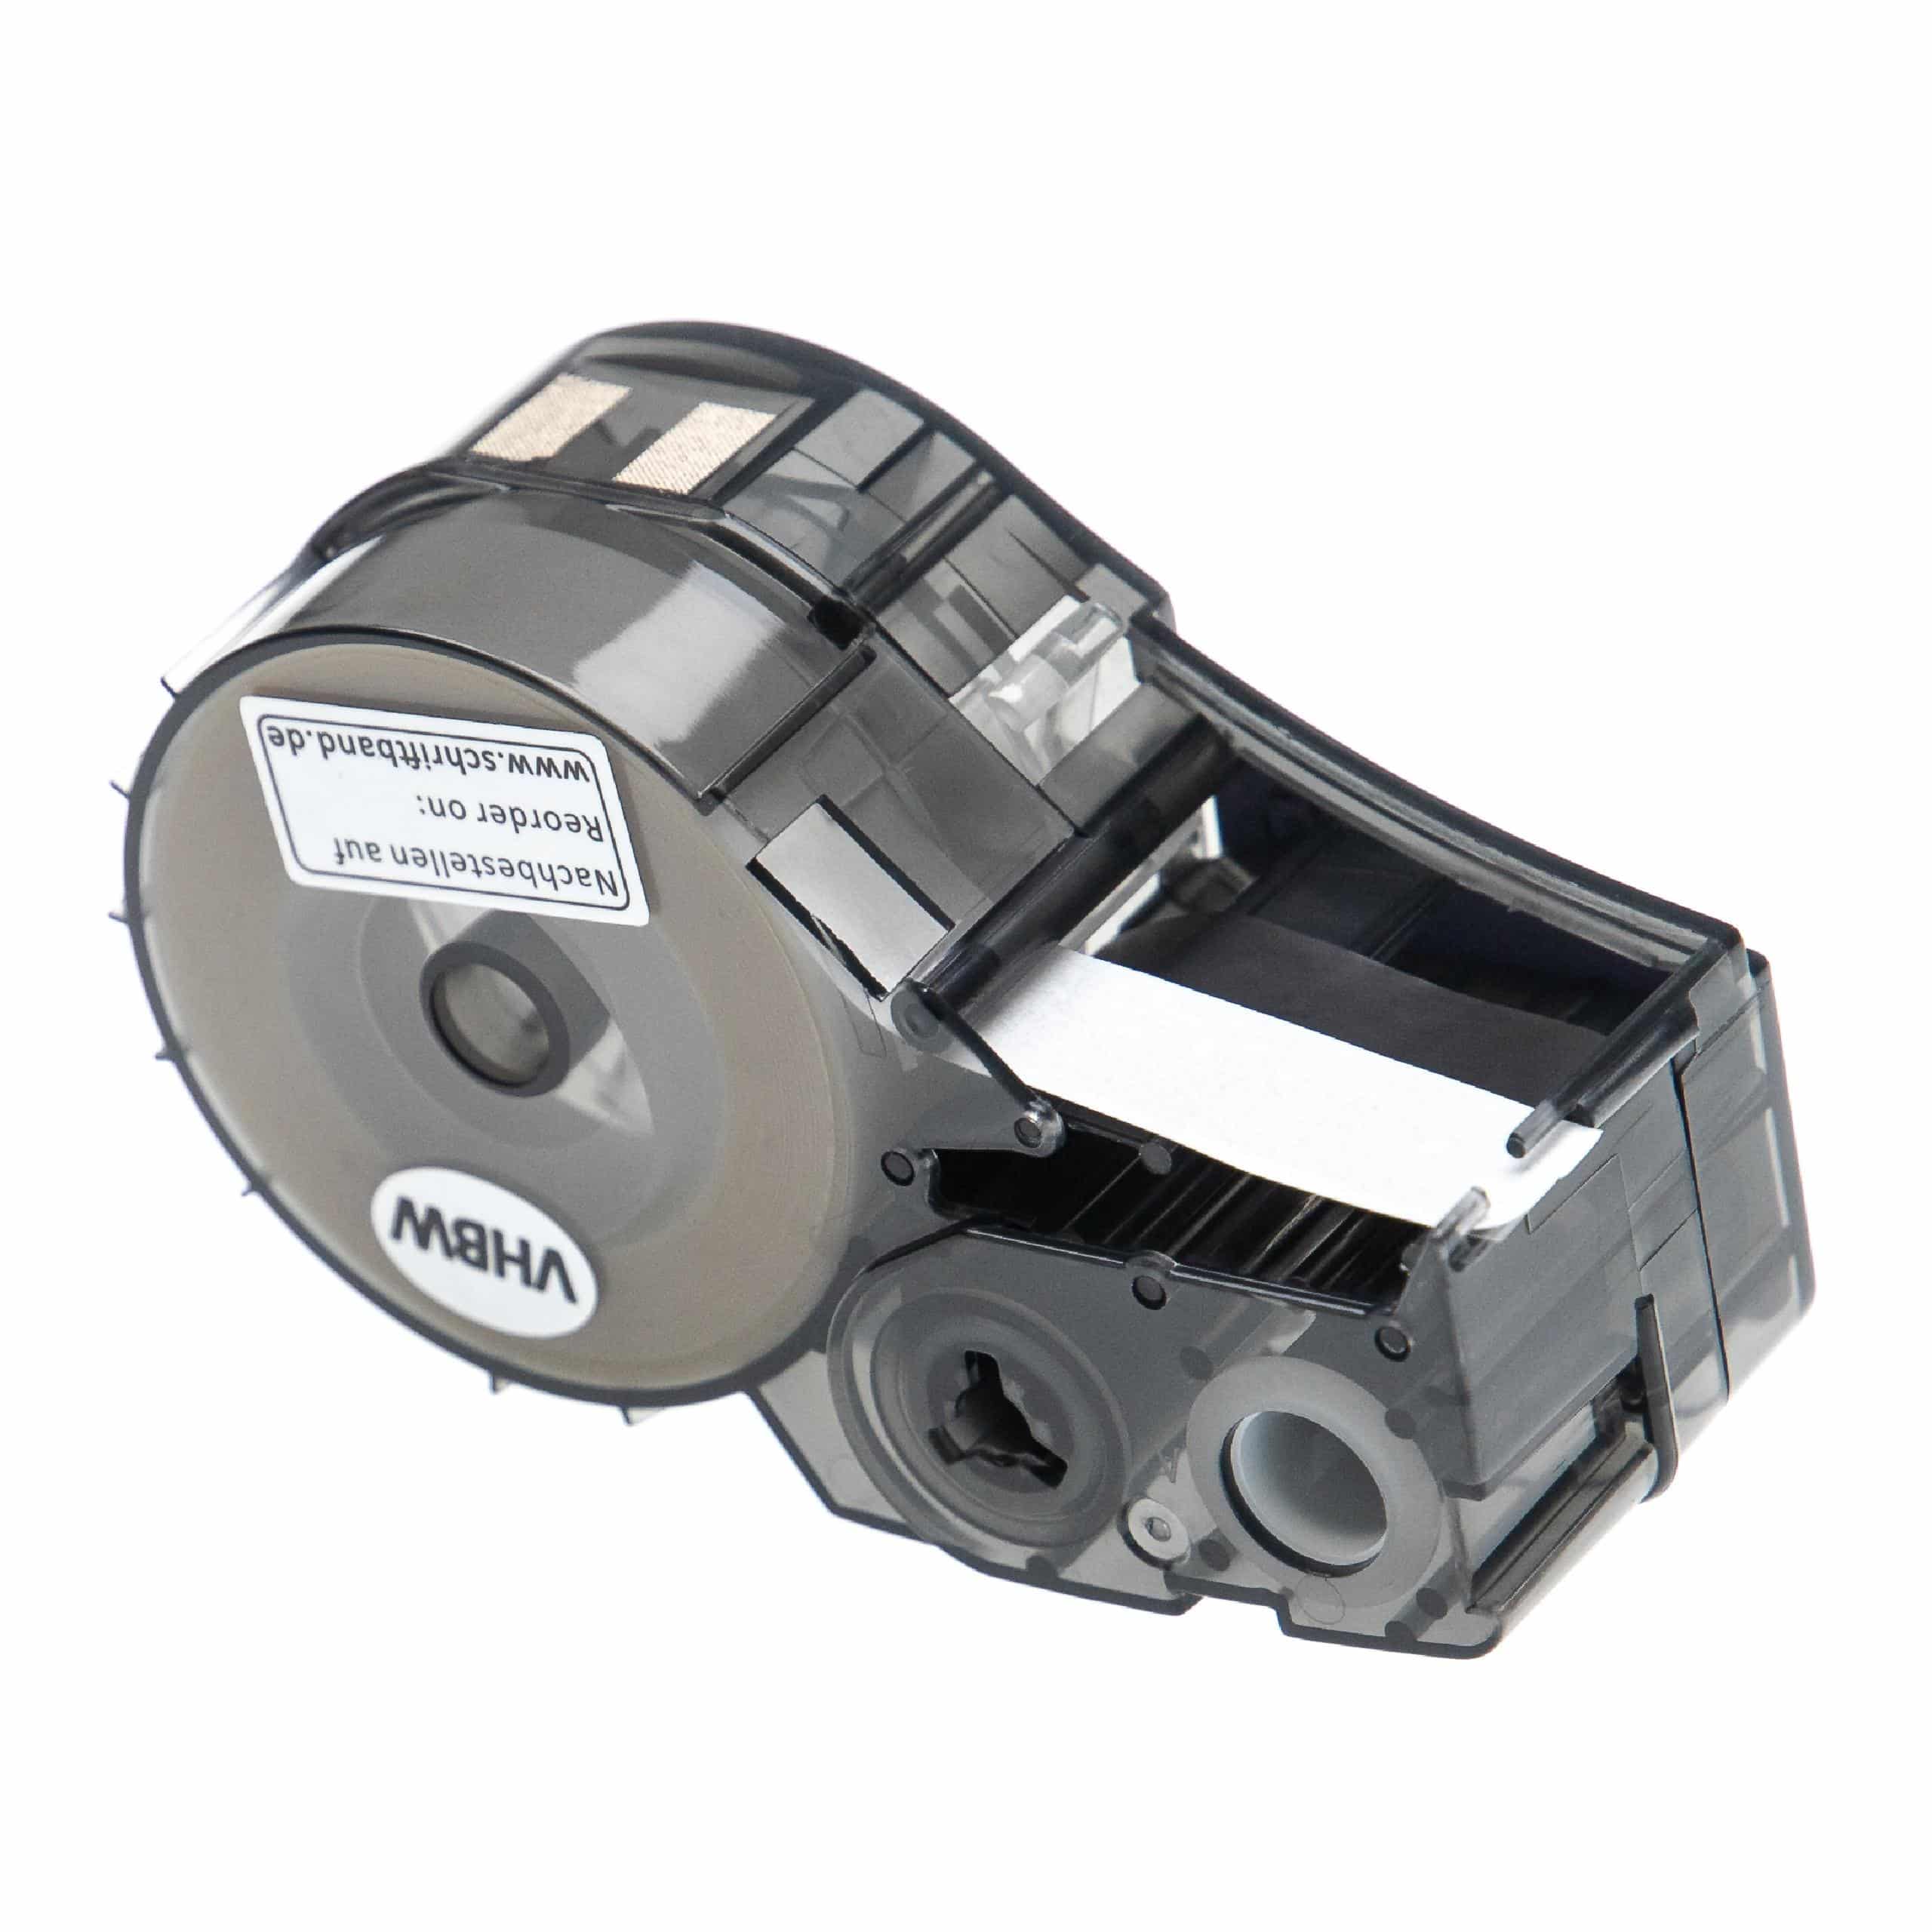 Cassetta nastro sostituisce Brady M21-250-430 per etichettatrice Brady 6,35mm nero su trasparente, poliestere